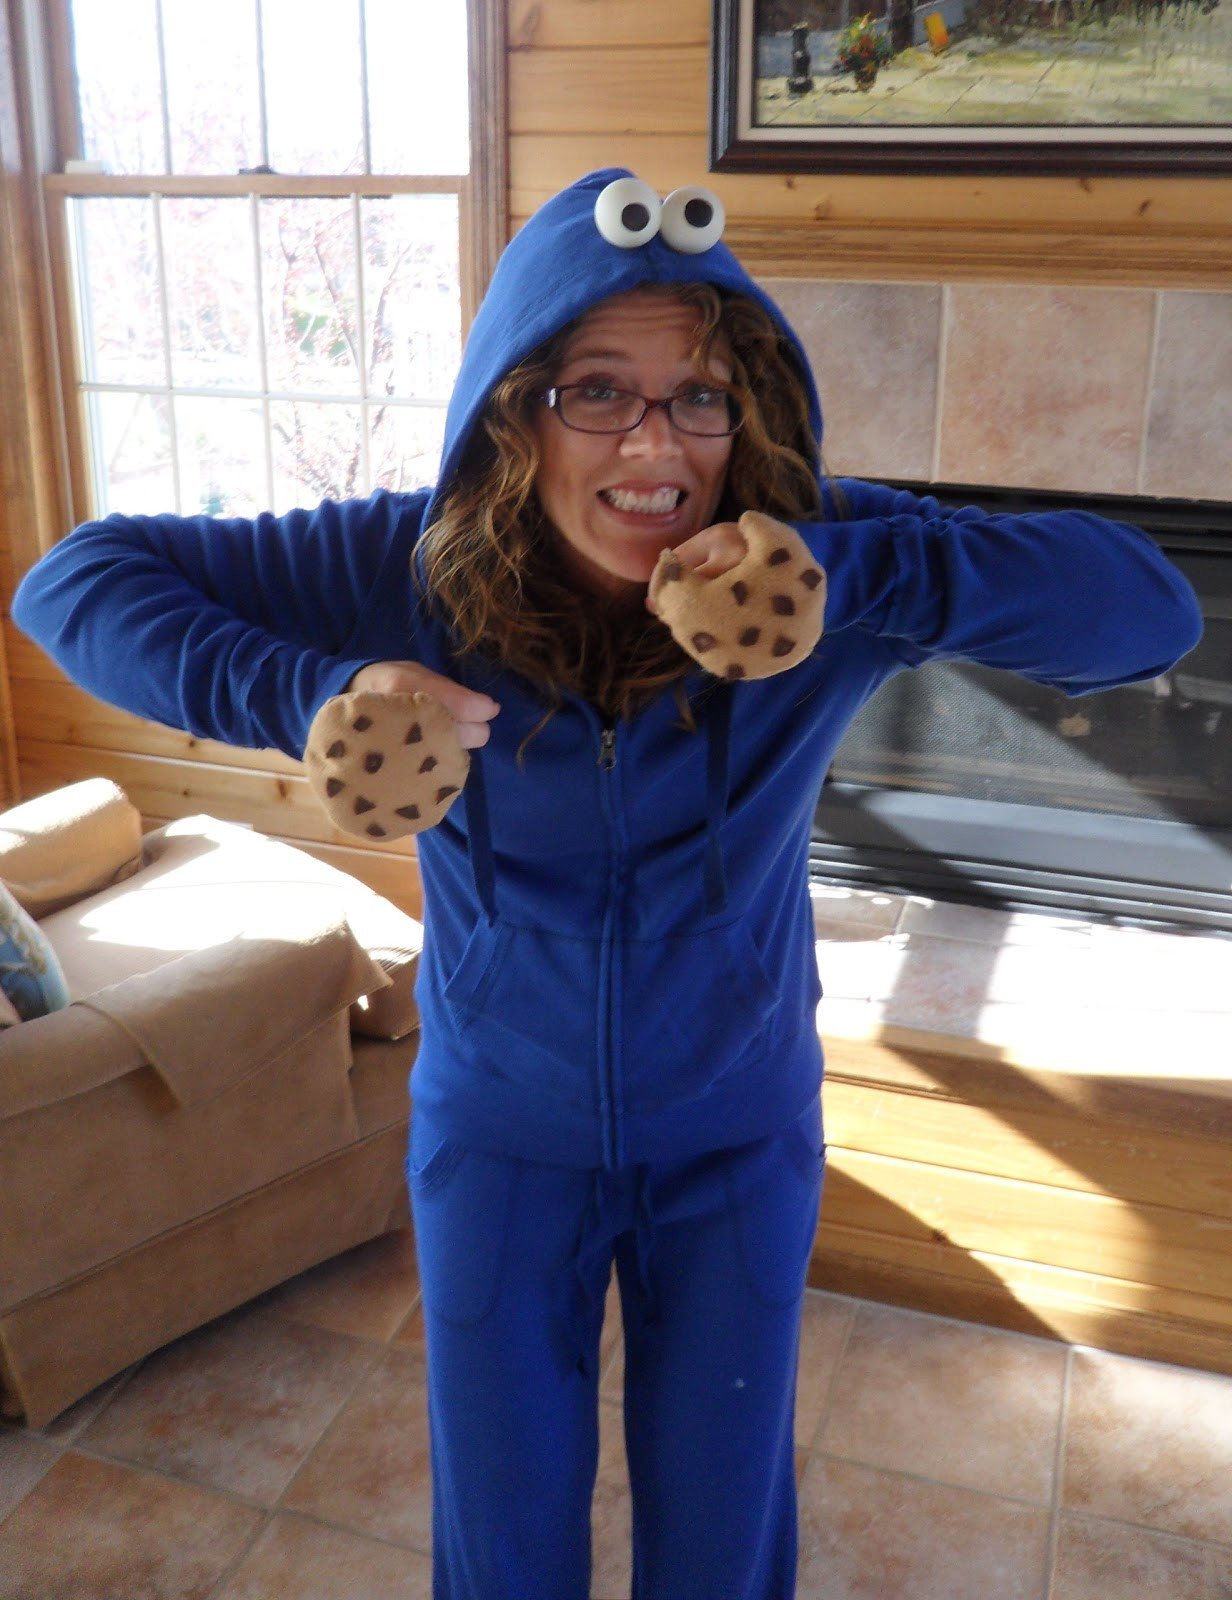 DIY Cookie Monster Costume
 Rhinestones & Pine Cones Mama s Gotta Craft